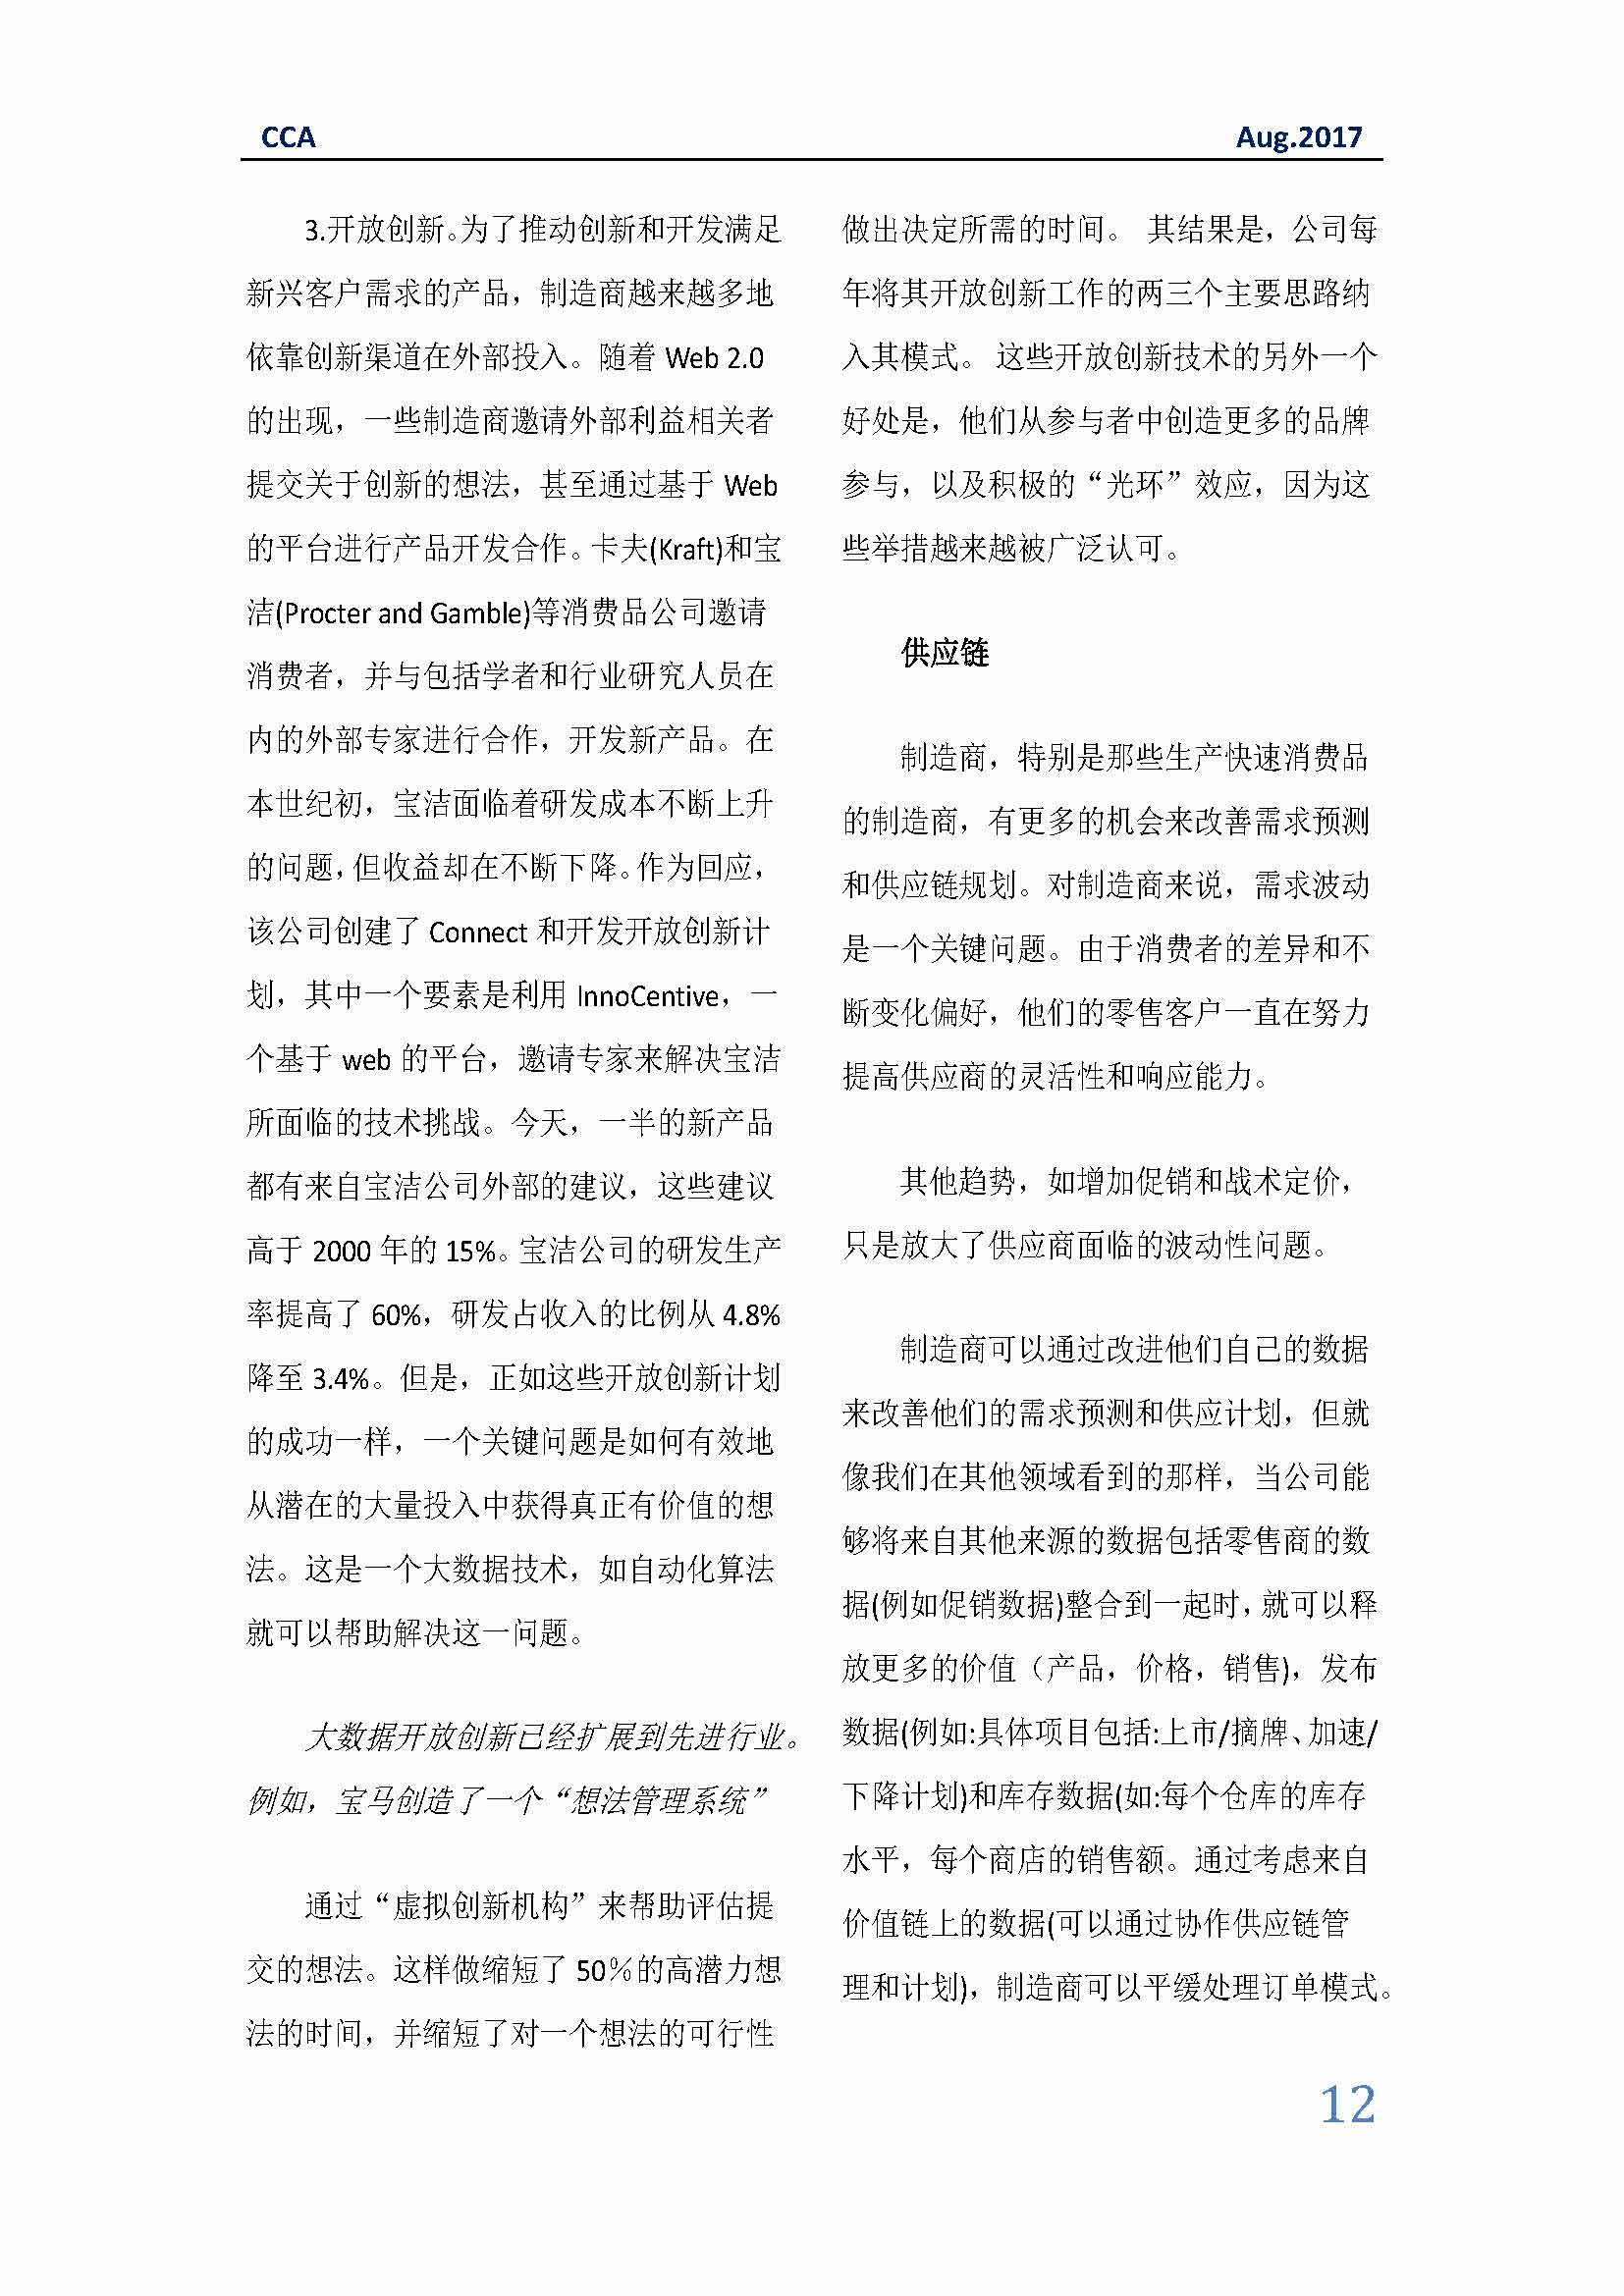 中国科技咨询协会国际快讯（第二十九期）_页面_12.jpg